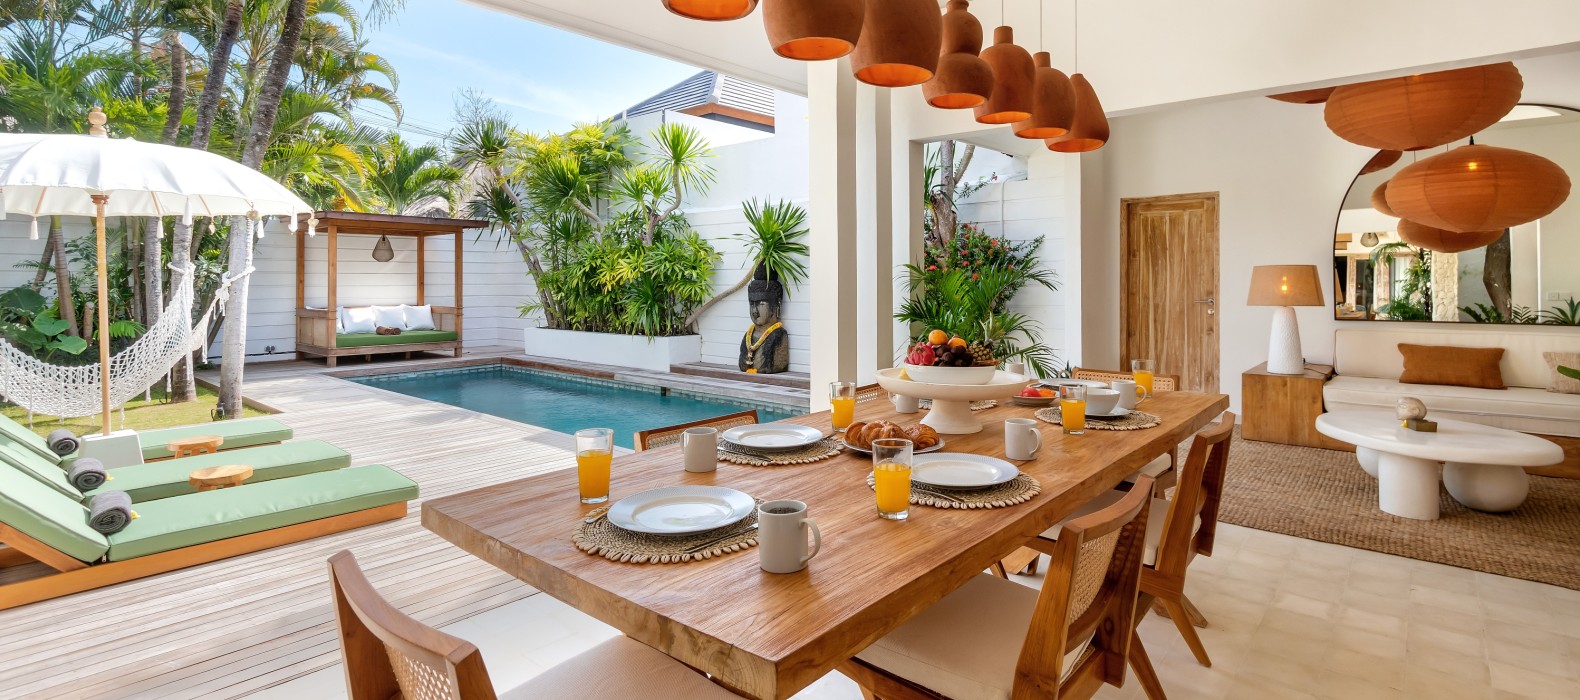 Dining area of Villa Gauguin in Bali